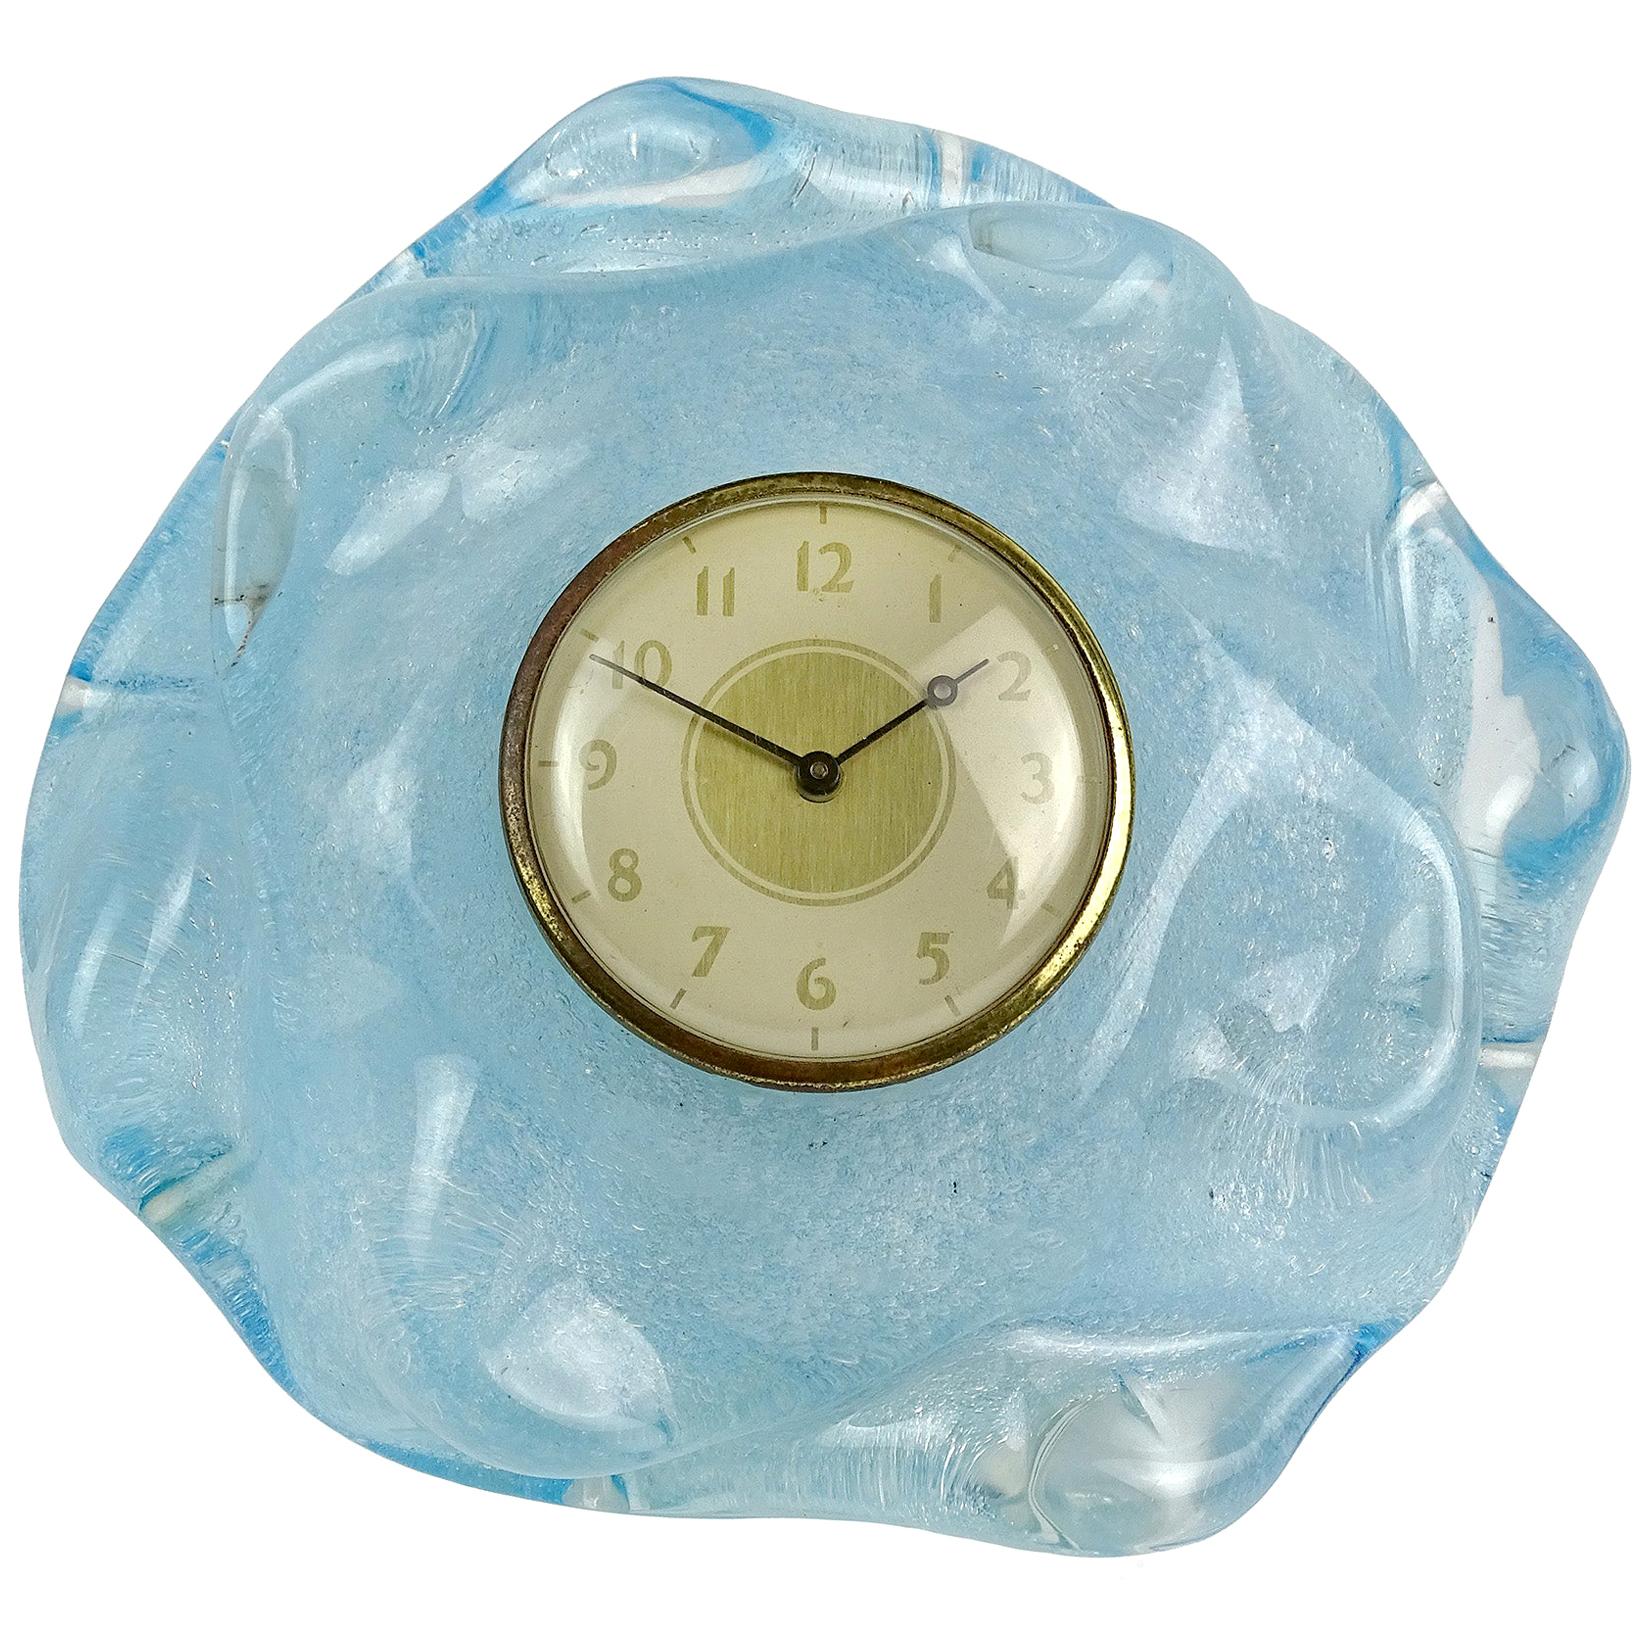 Seguso Vetri d'Arte Murano Blue Pulegoso Bubbles Italian Art Glass Desk Clock